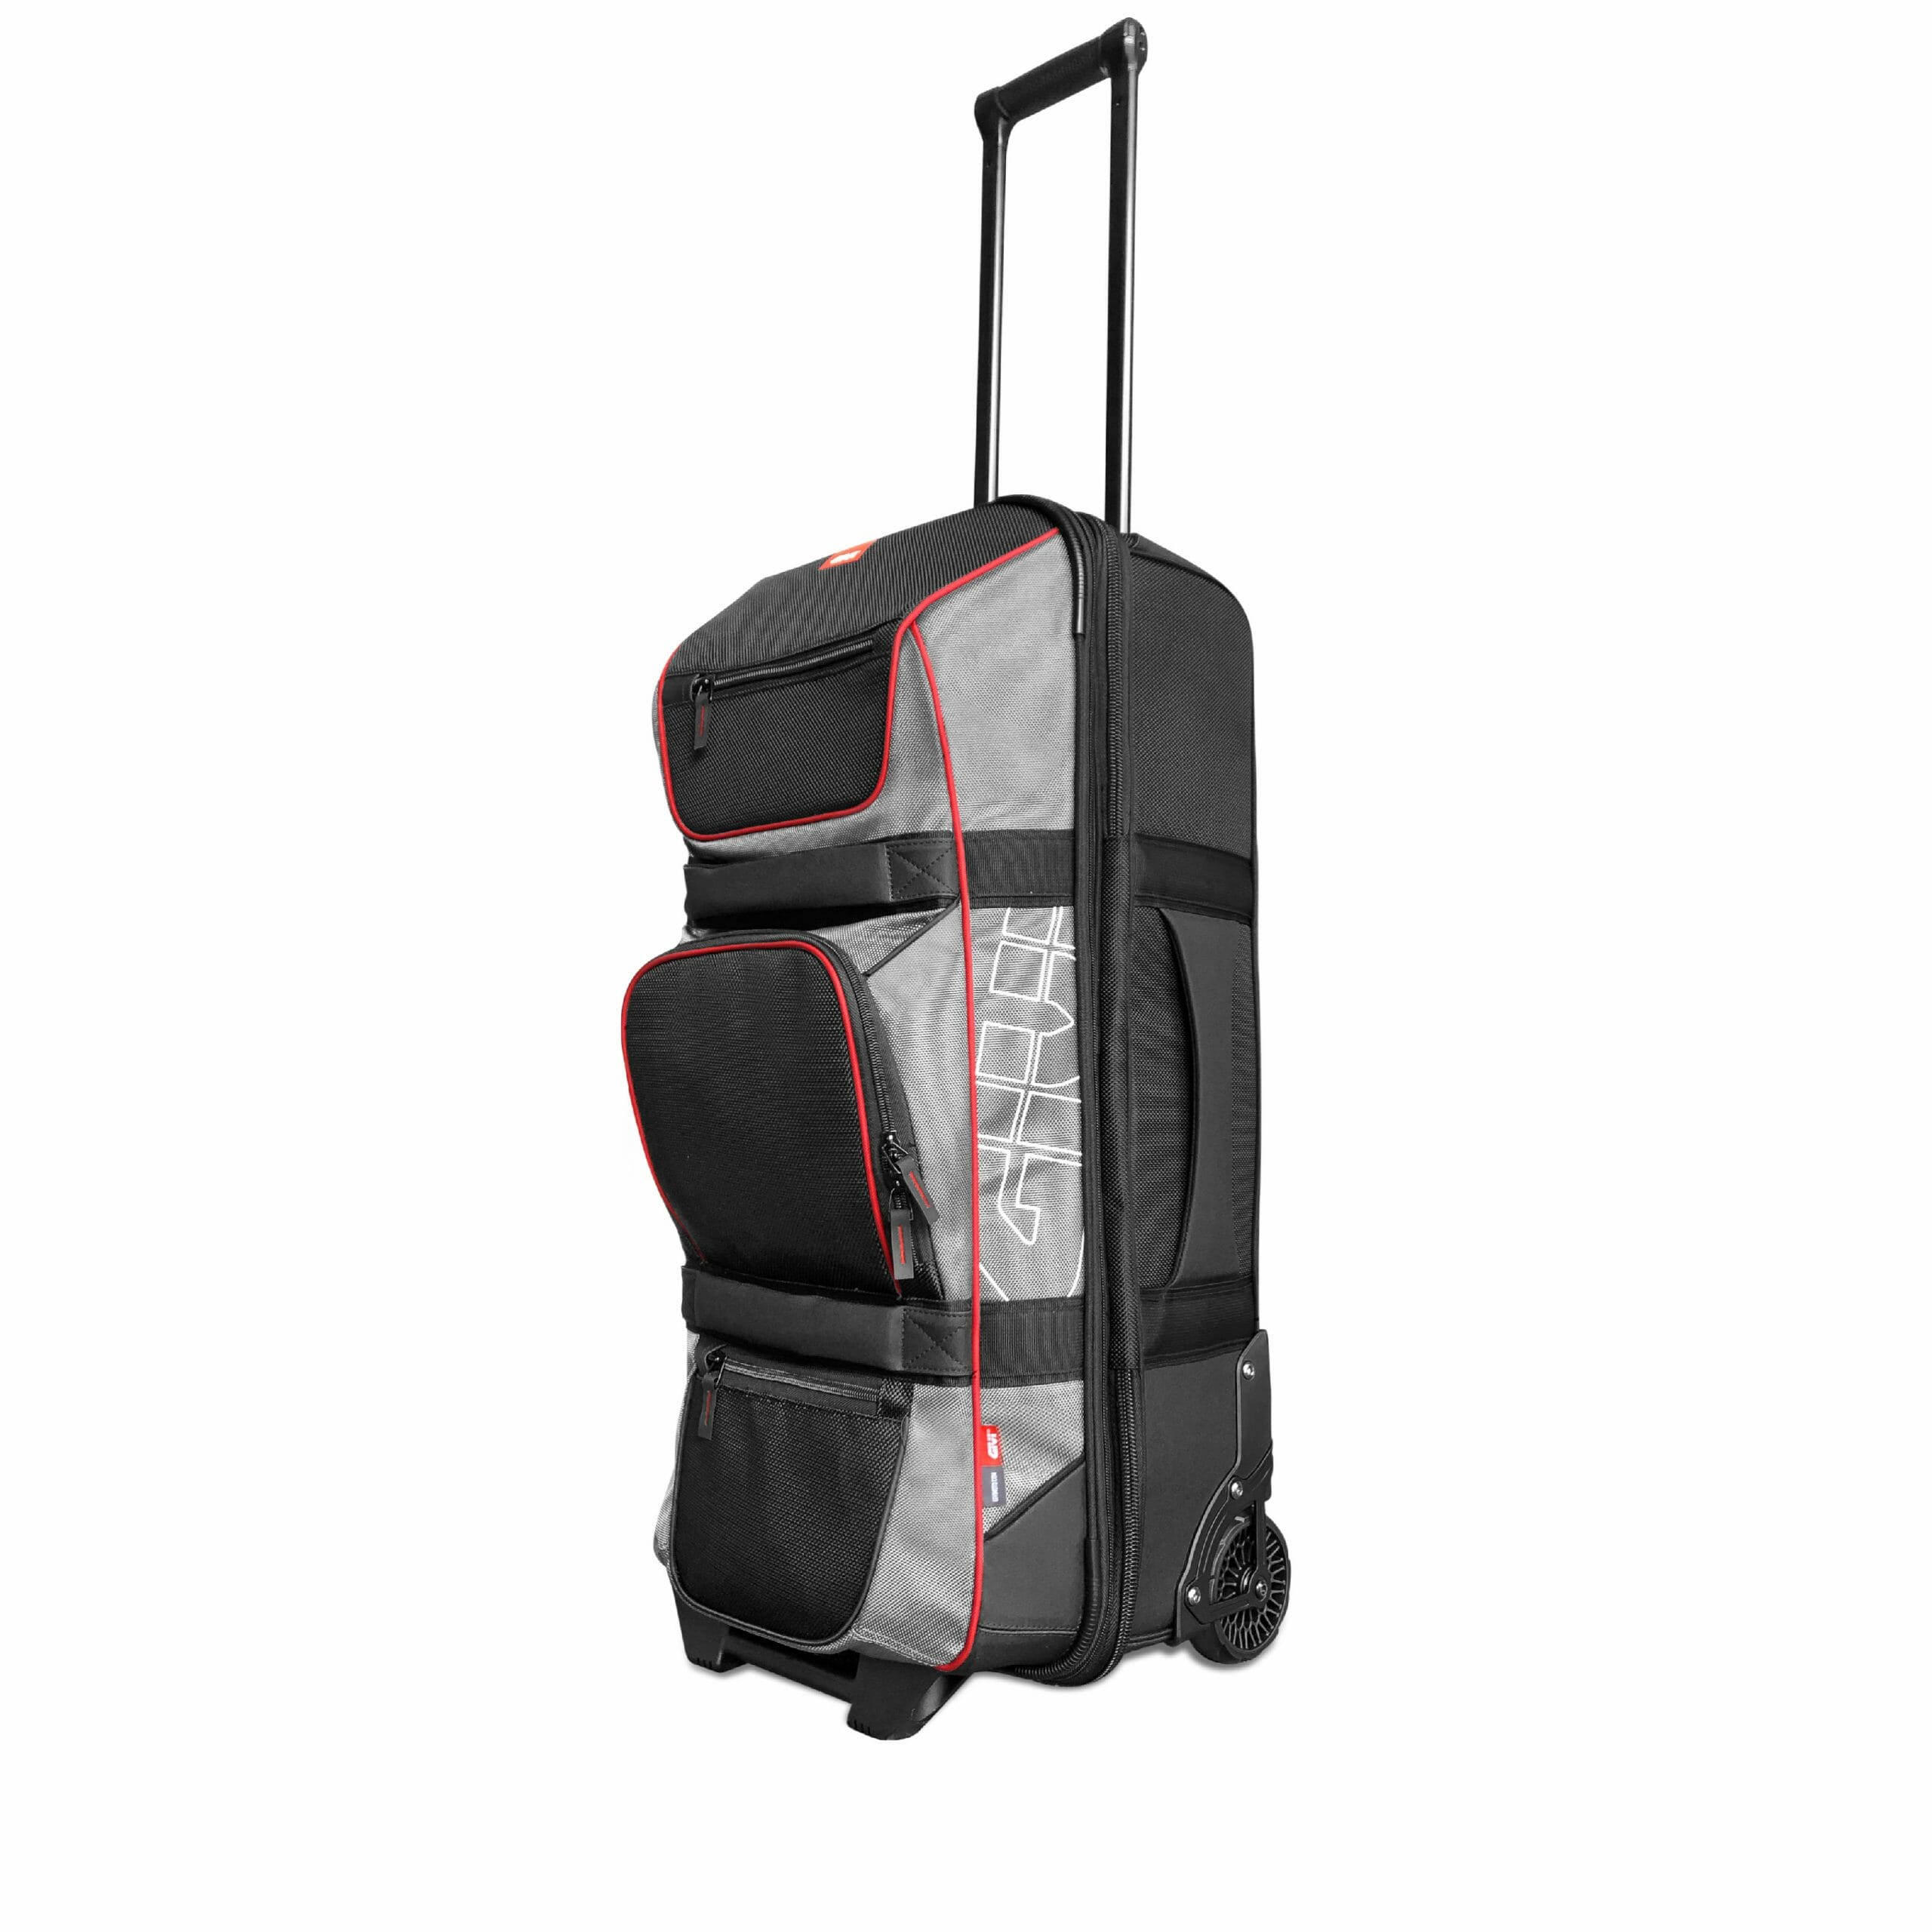 GIVI TR11 Travel Bag handle